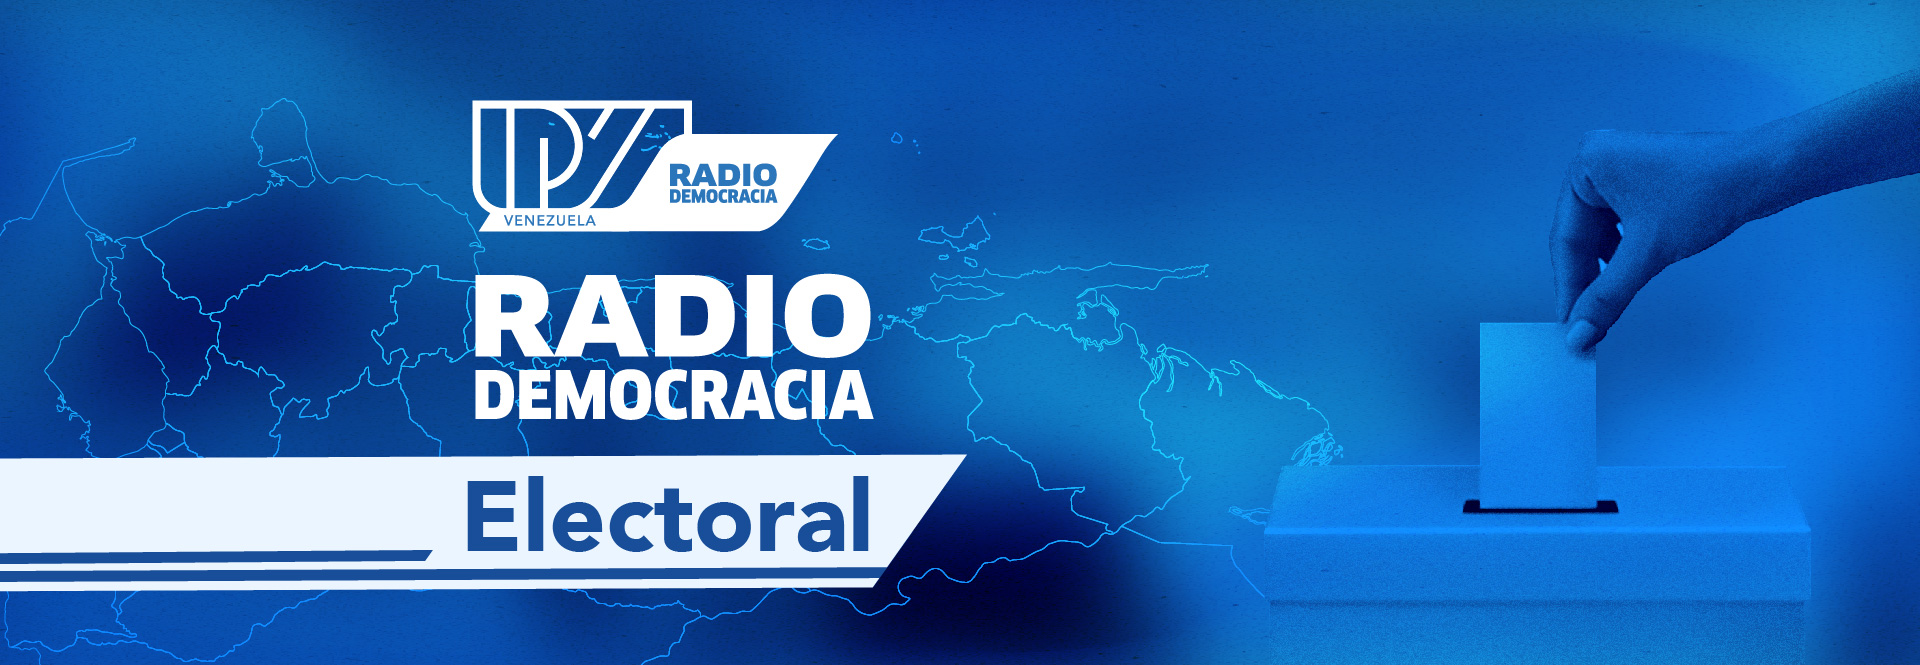 IPYS Venezuela crea la iniciativa “Radio Democracia Electoral”